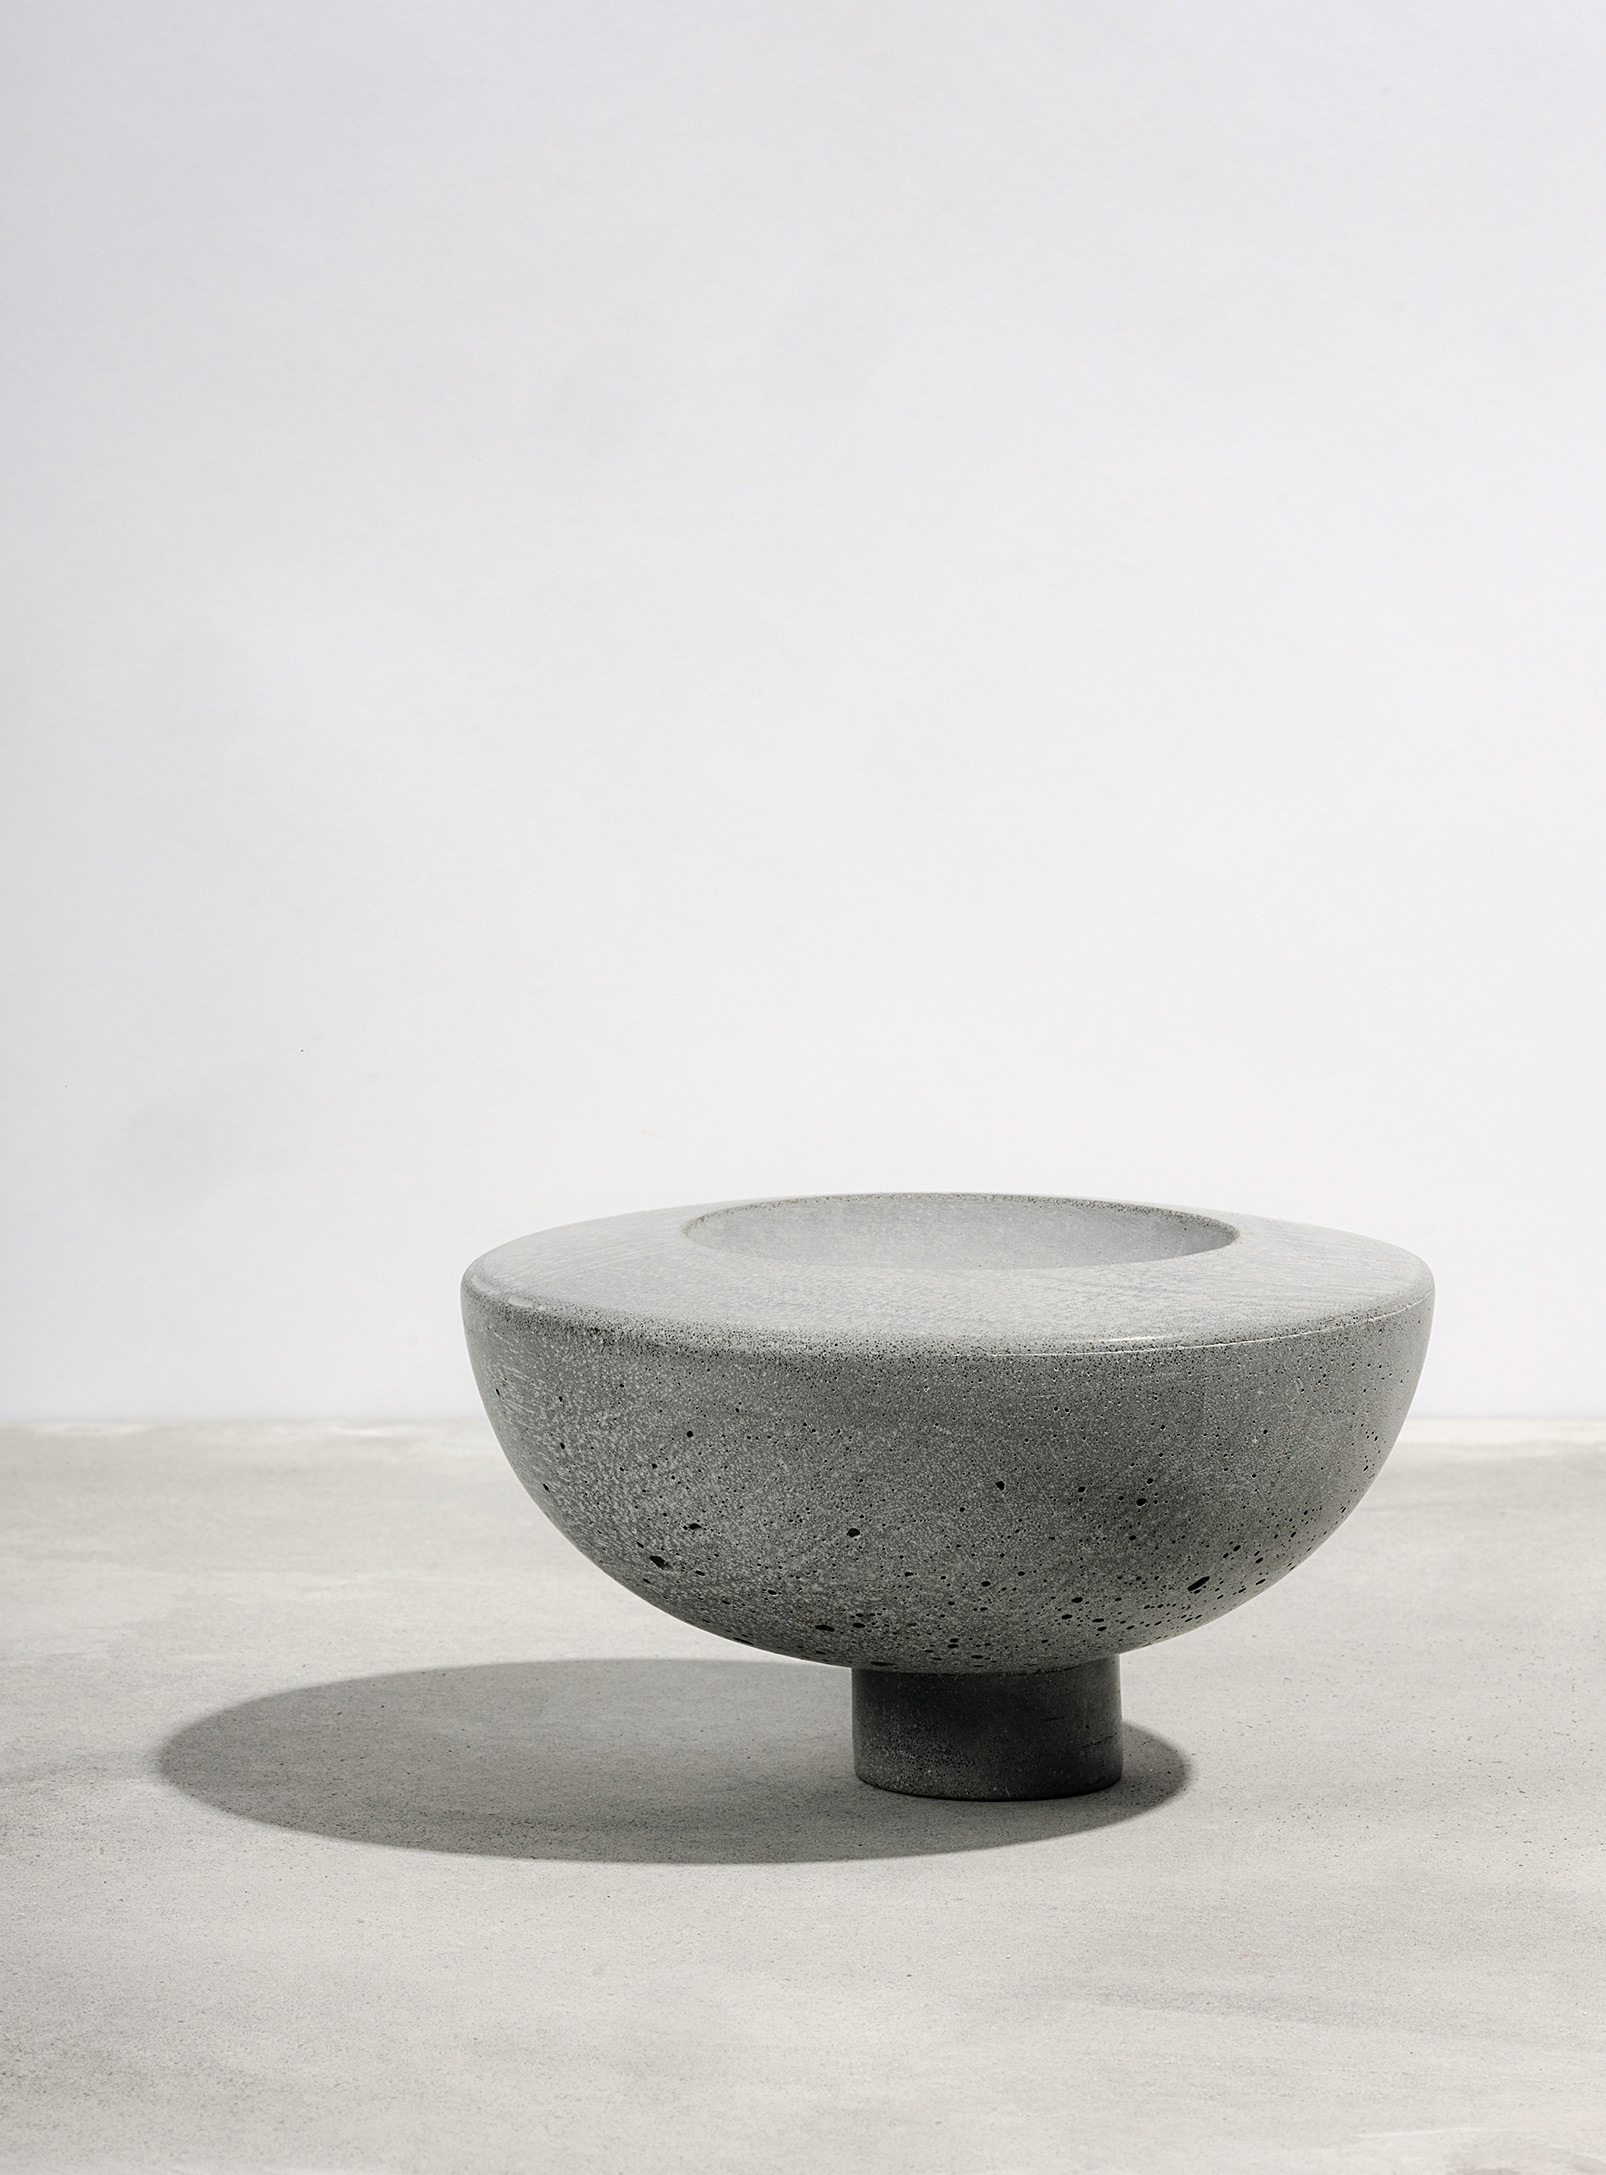 AtelierB - Standing off-centre decorative concrete bowl